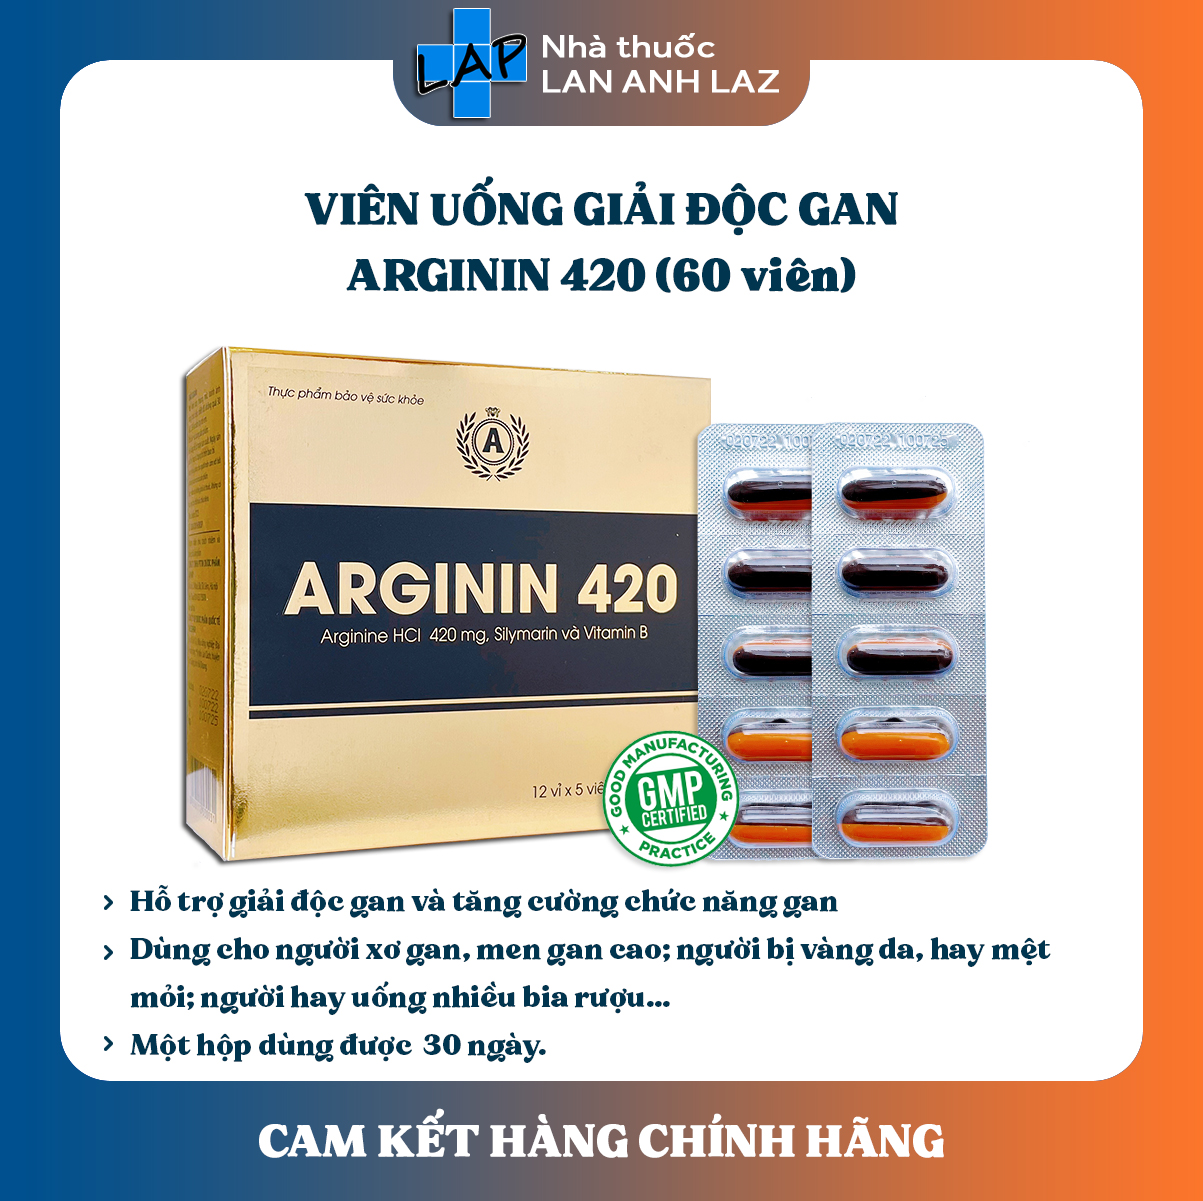 ARGININ 420 - Viên uống hỗ trợ bảo vệ gan, tăng cường chức năng gan.